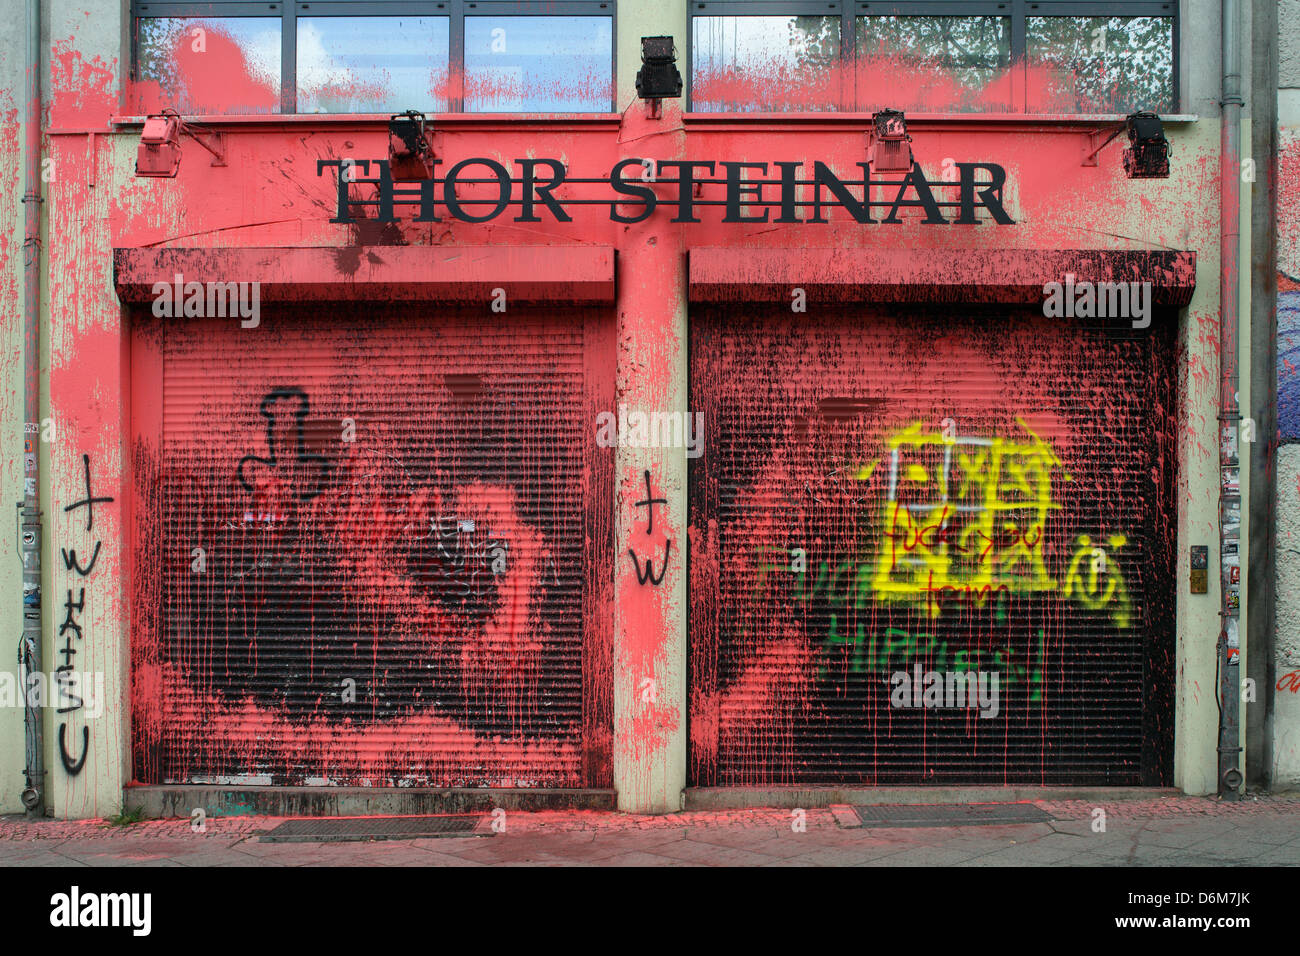 Berlino, Germania, vernice attentato commesso in un negozio di Thor Steinar Foto Stock